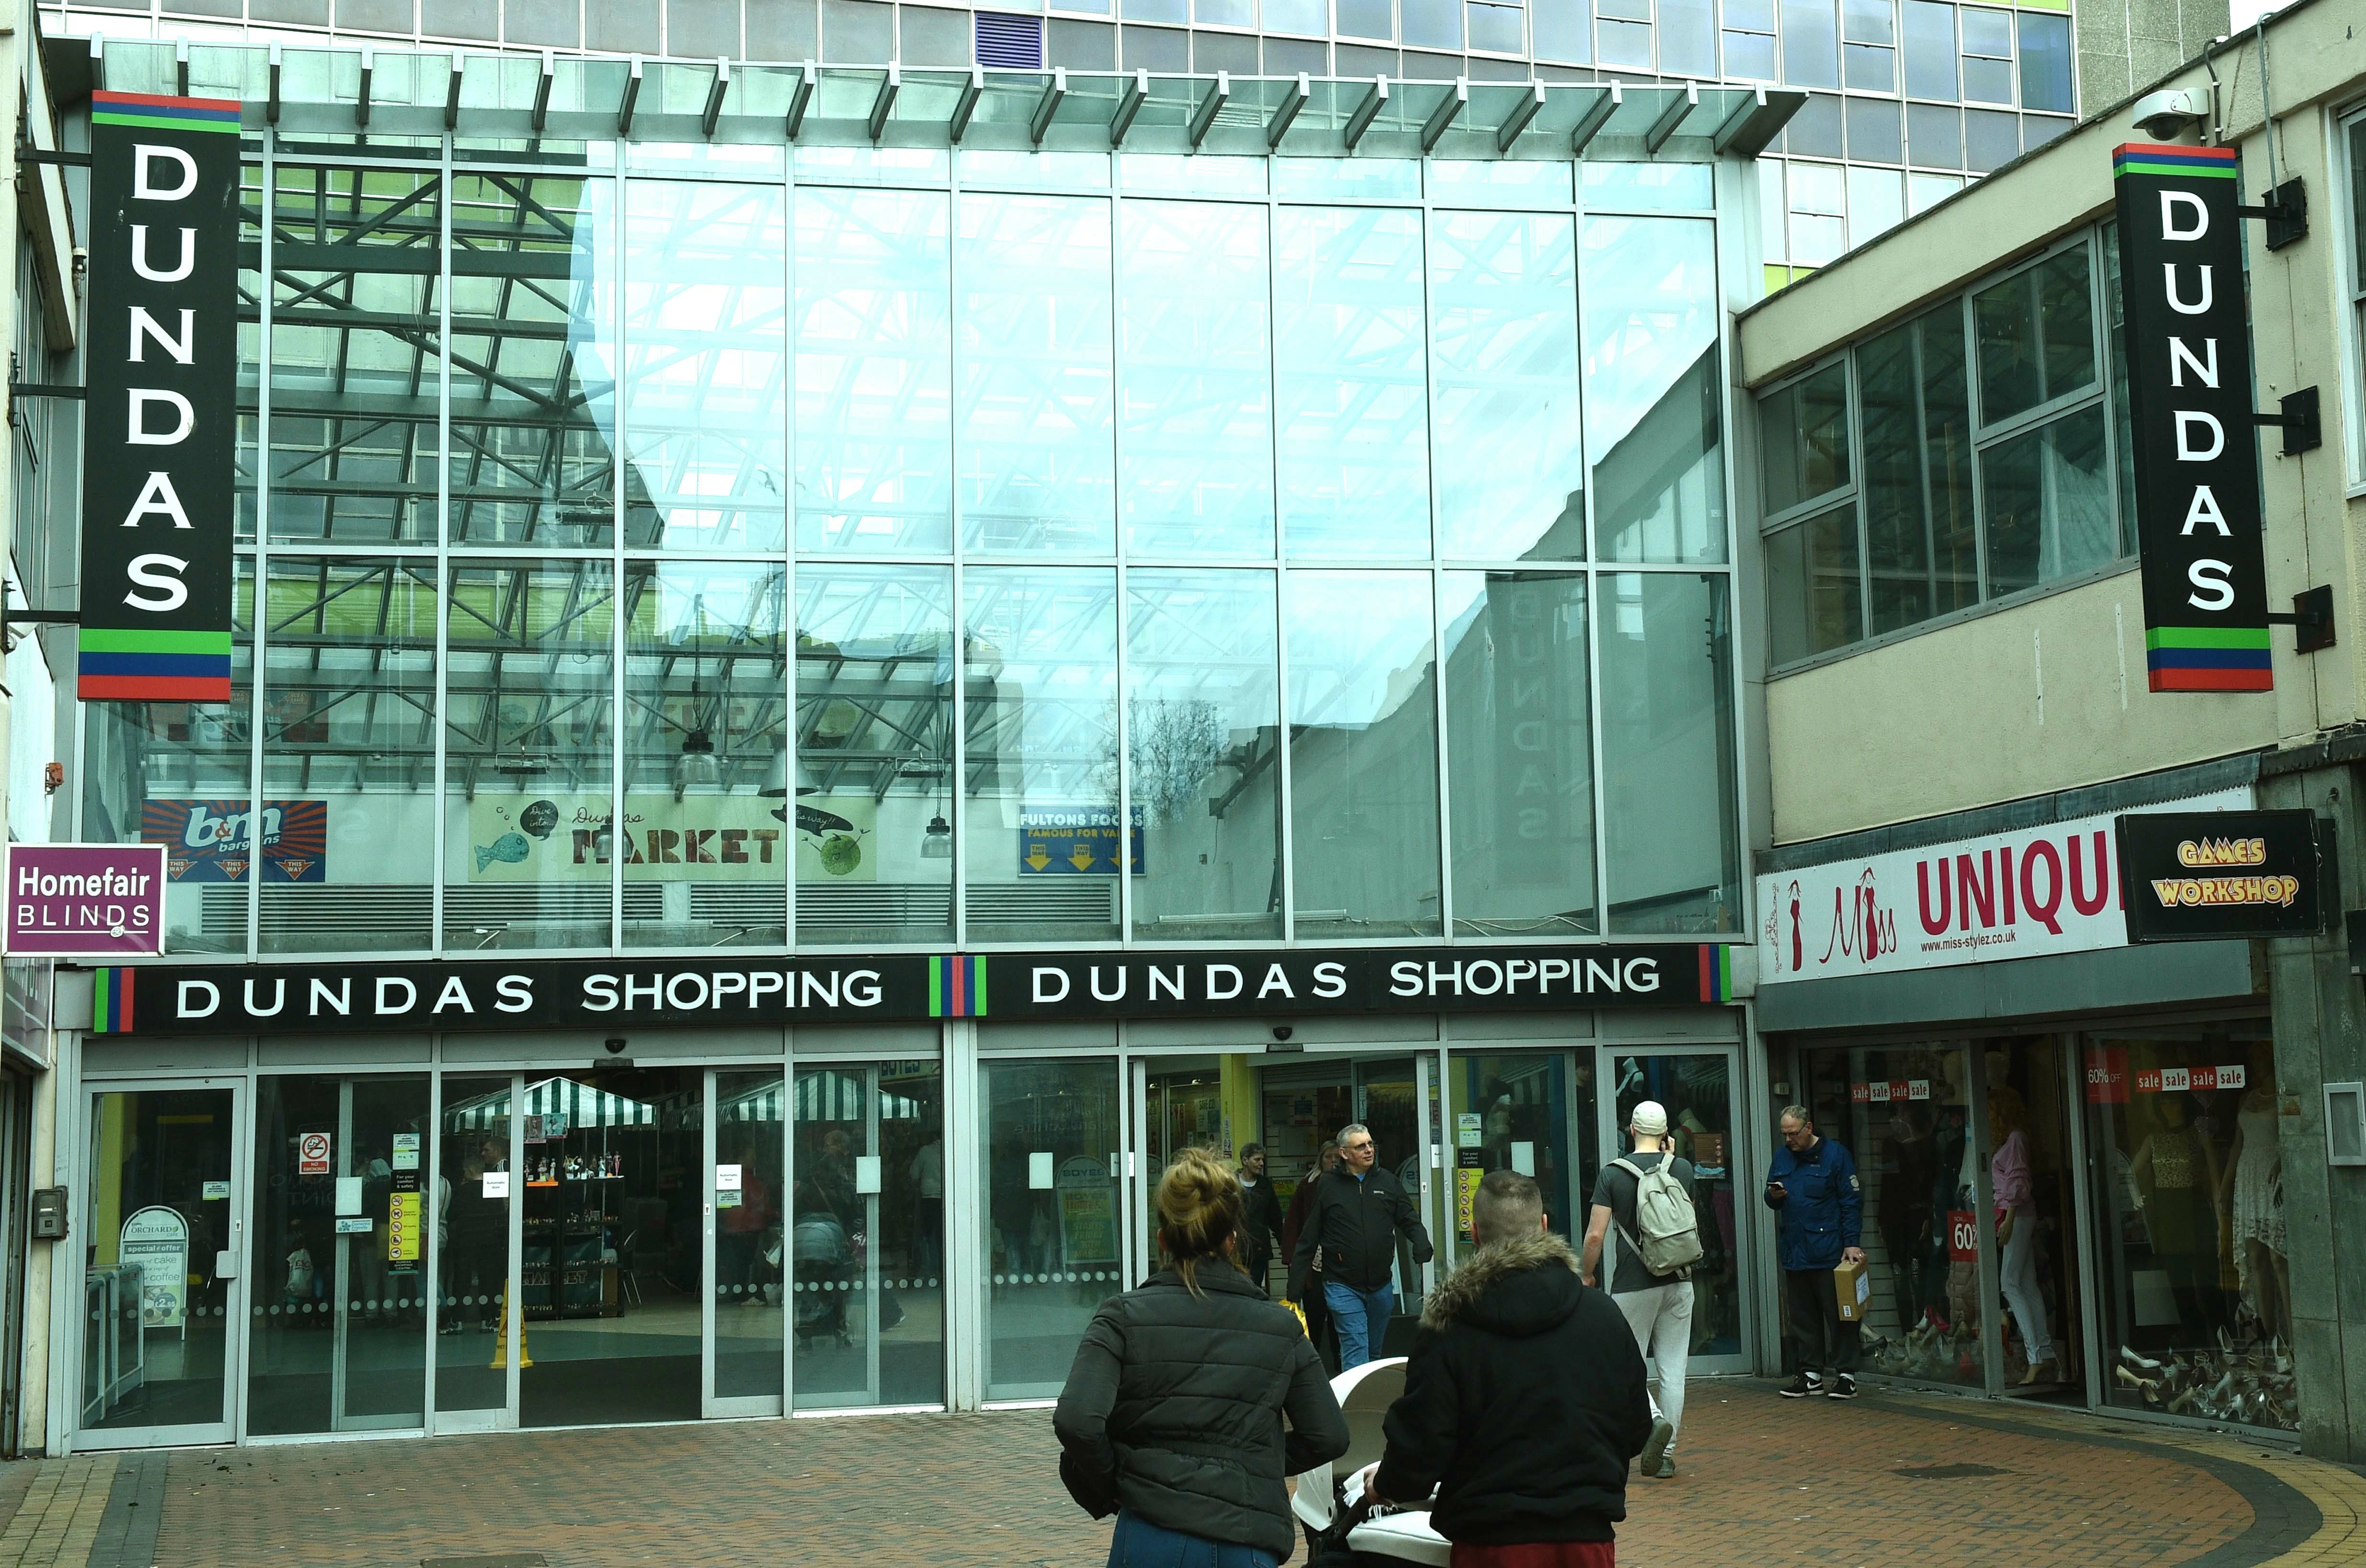 Project Escape now occupies a unit above Dundas Shopping Centre